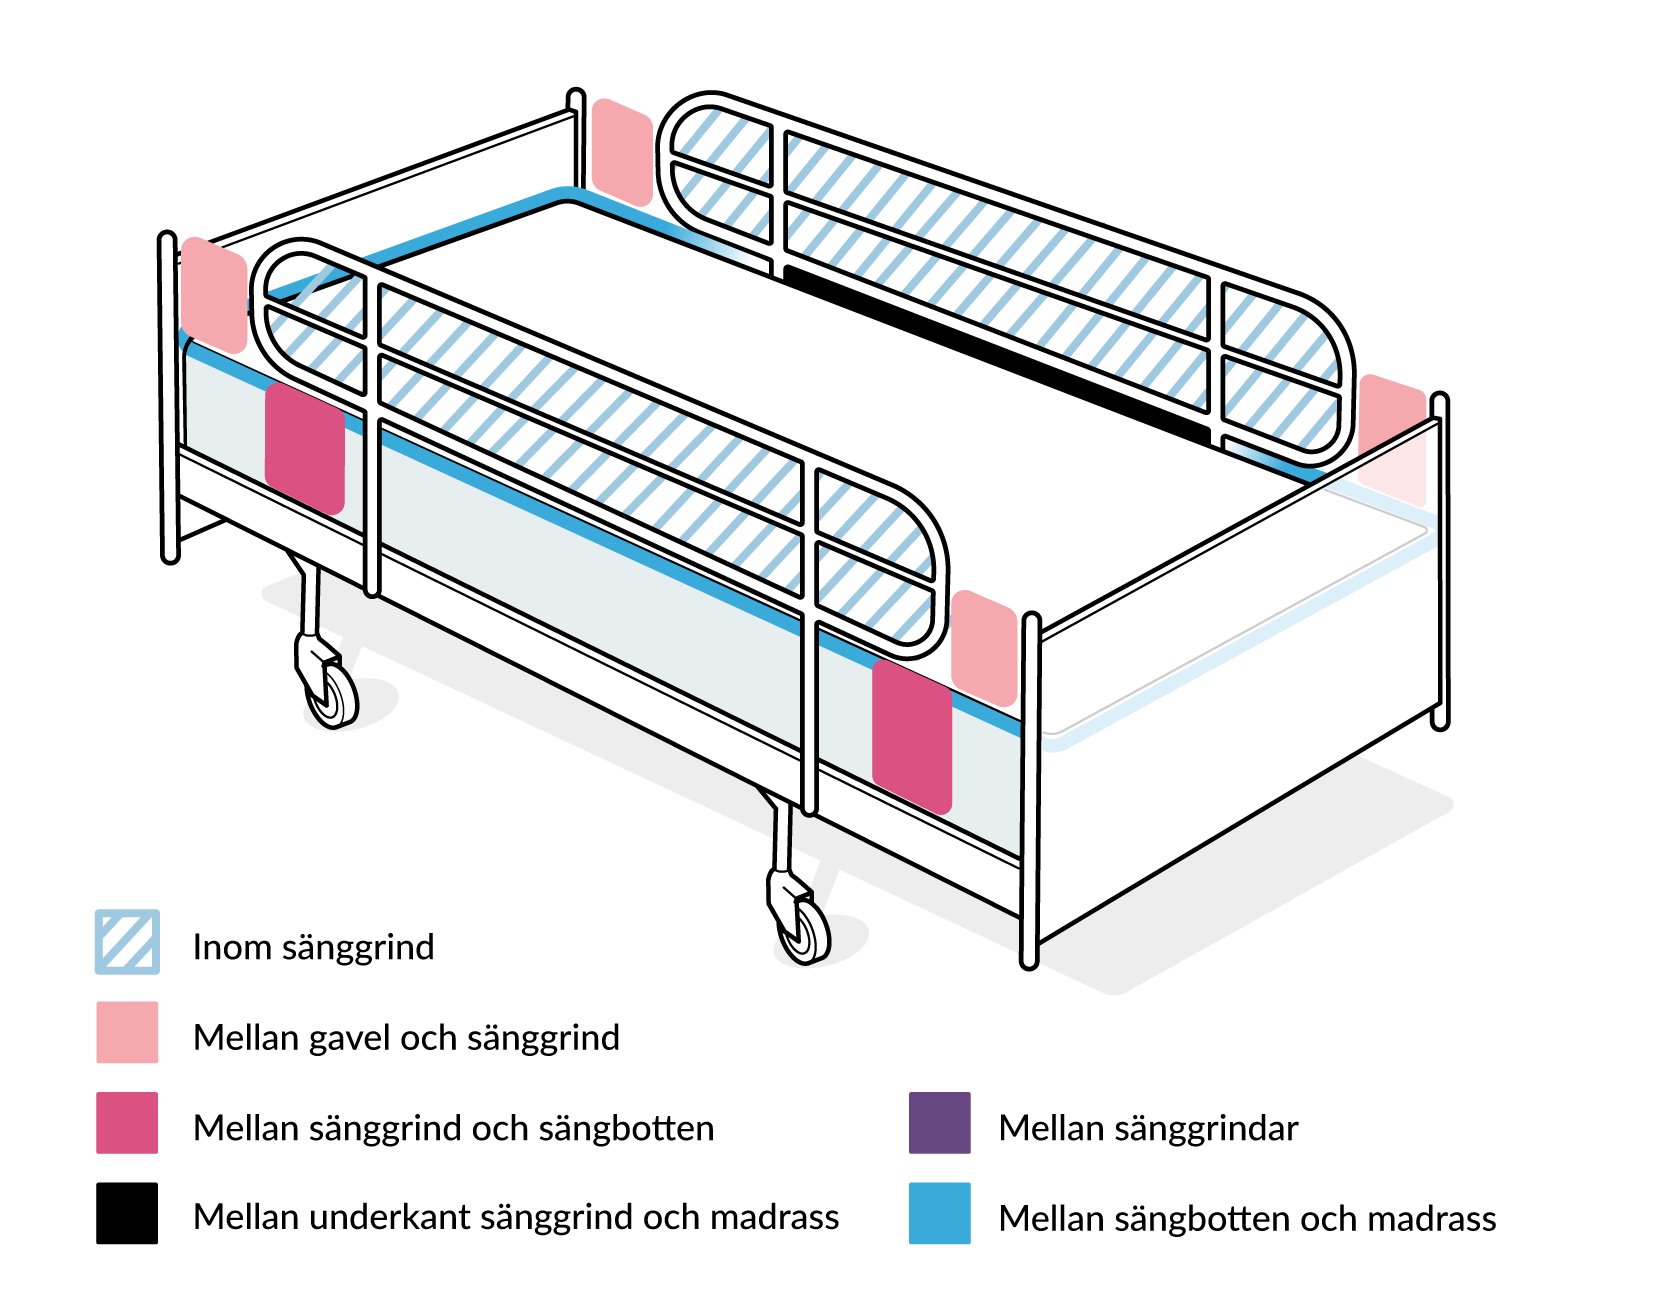 Bild som visar kritiska punkter för klämrisk på vårdsäng med sänggrindar